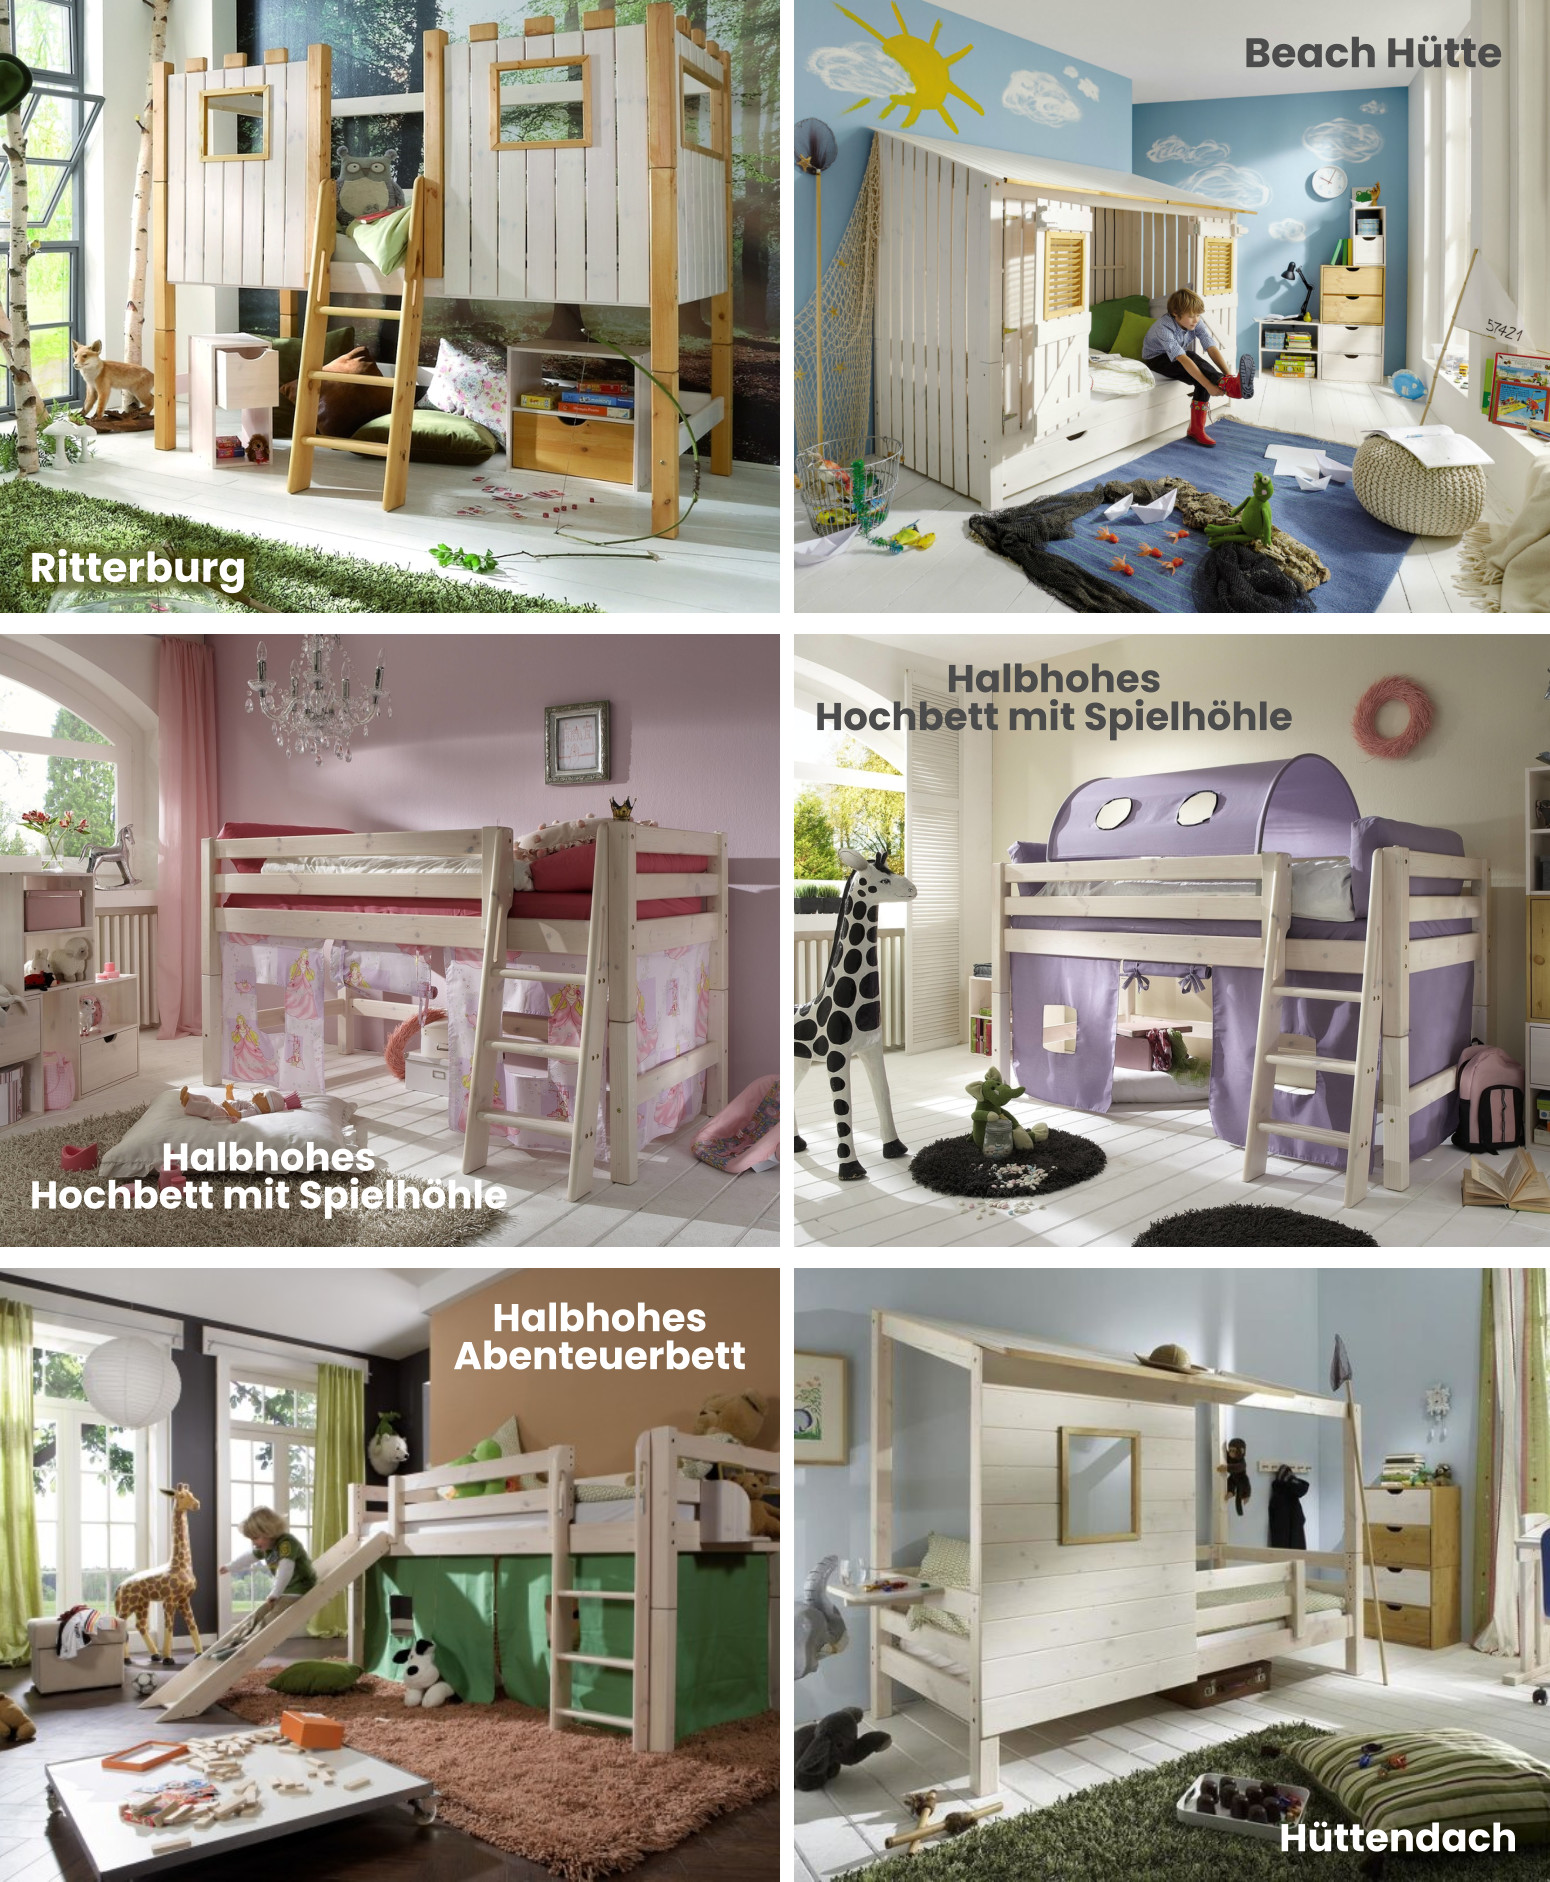 InfansKids Abenteuerbetten für Kinder, Kinderbetten, Spielzimmer, Hochbett, halbhohes Bett